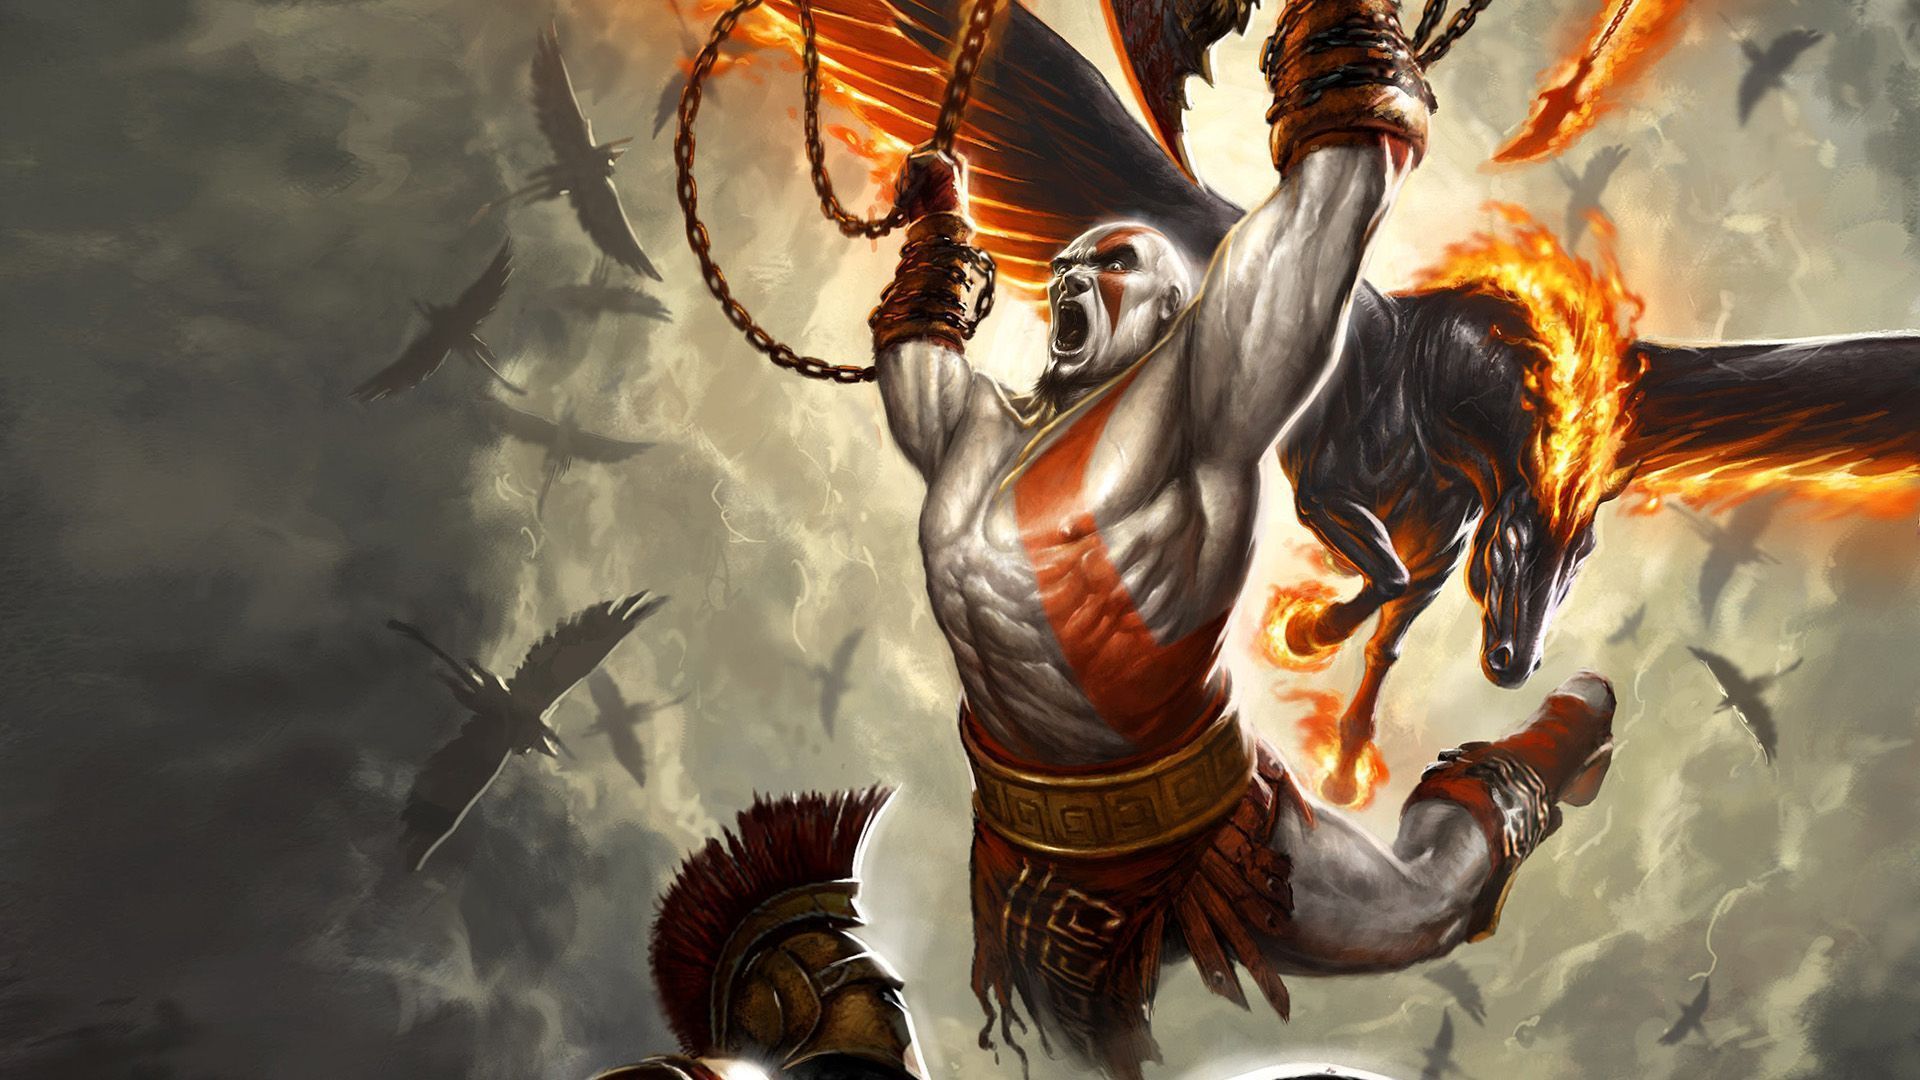 Kratos HD Wallpaper | 1920x1080 | ID:29458